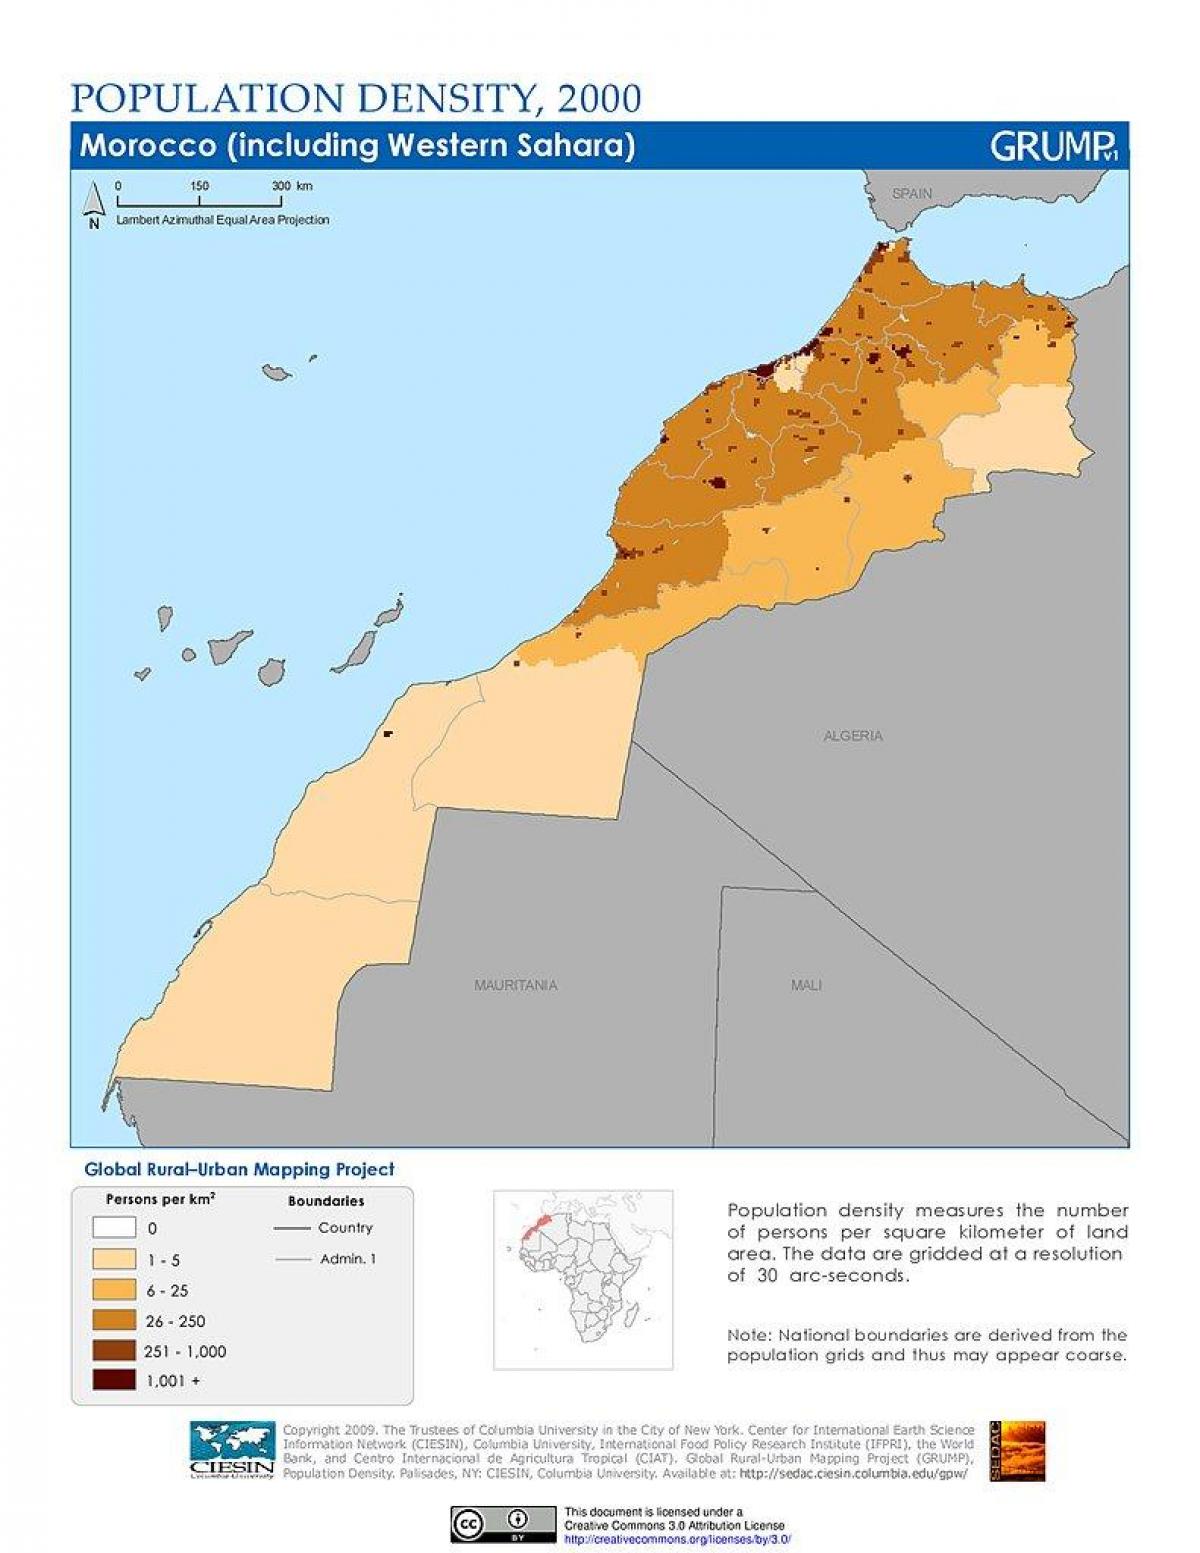 Mappa della densità del Marocco